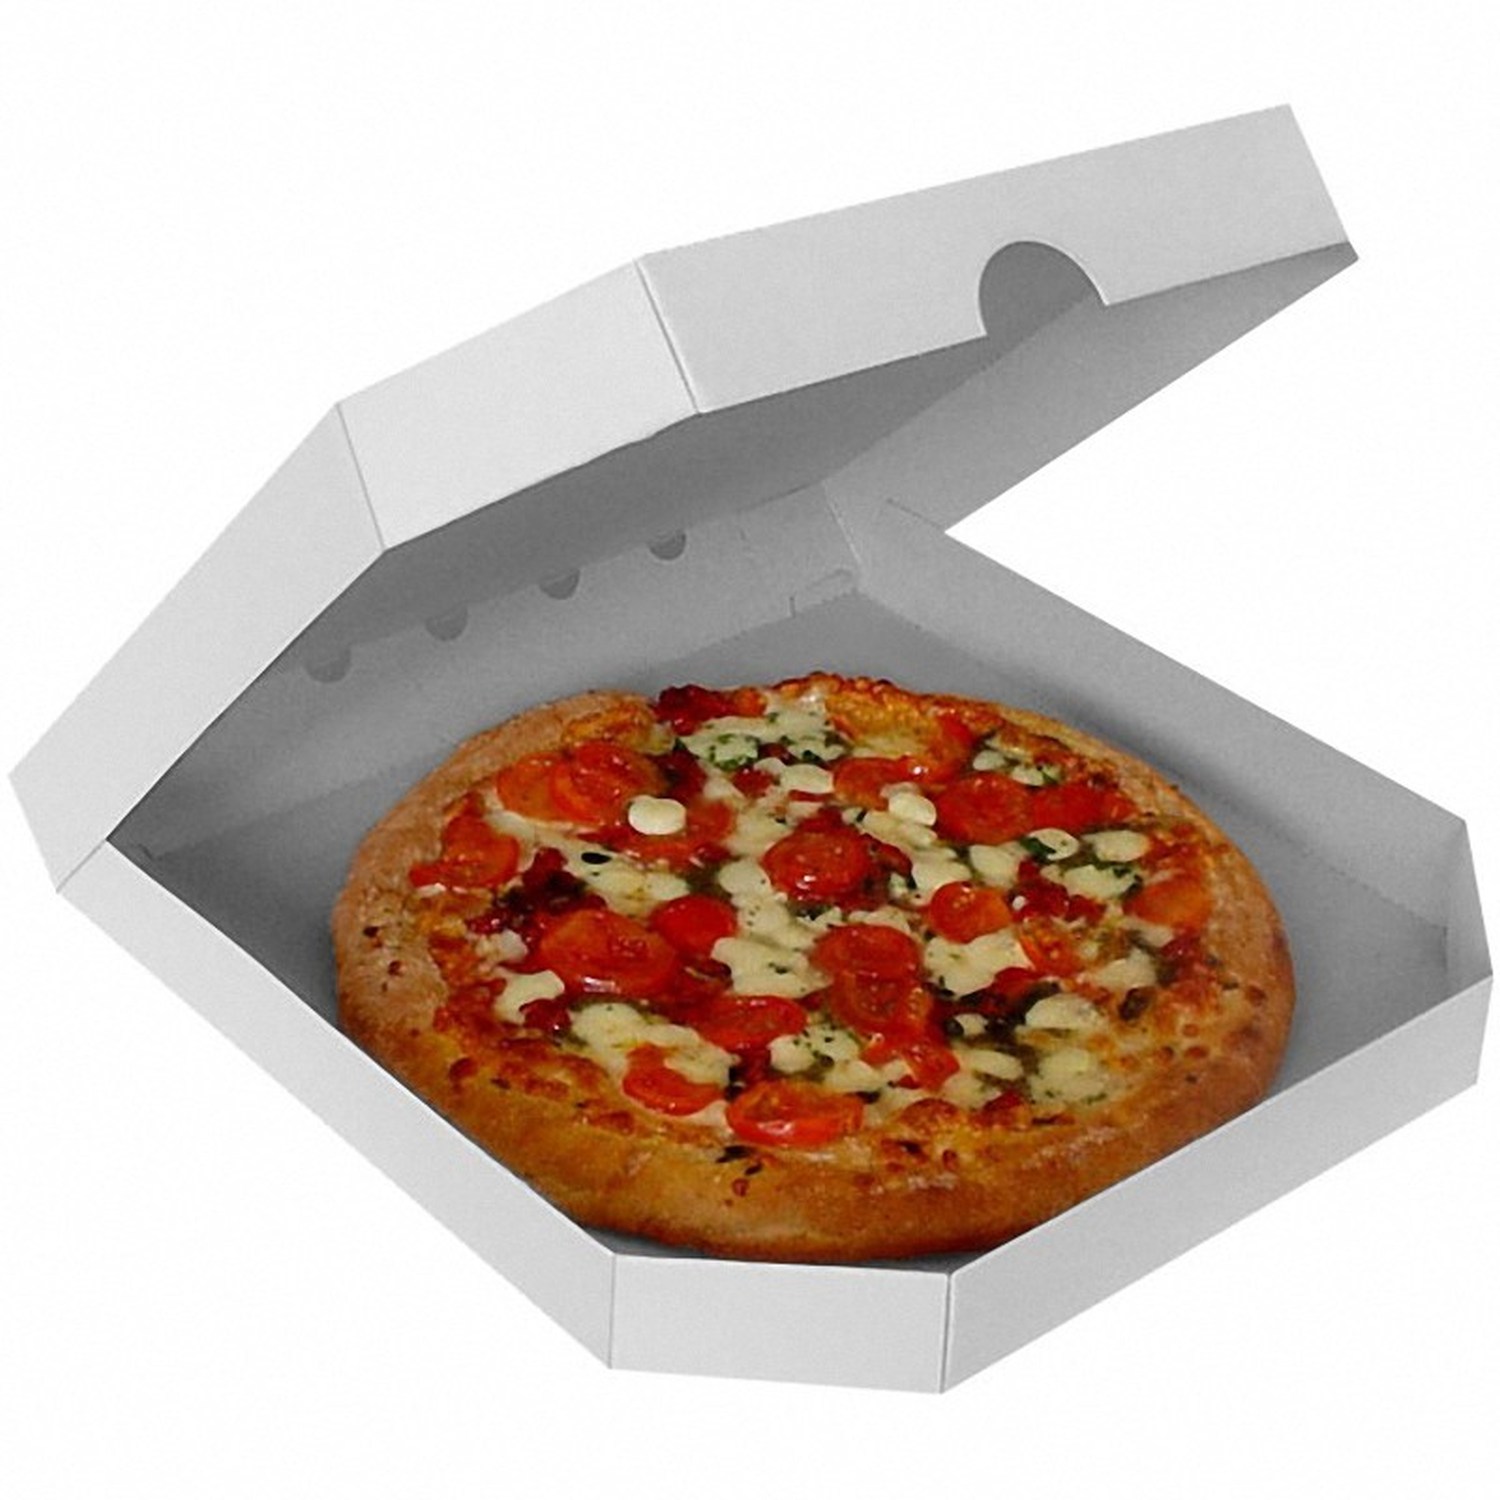 Pizzakarton -extra stark- wei, 30 x 30 x 3 cm, 100 Stk.